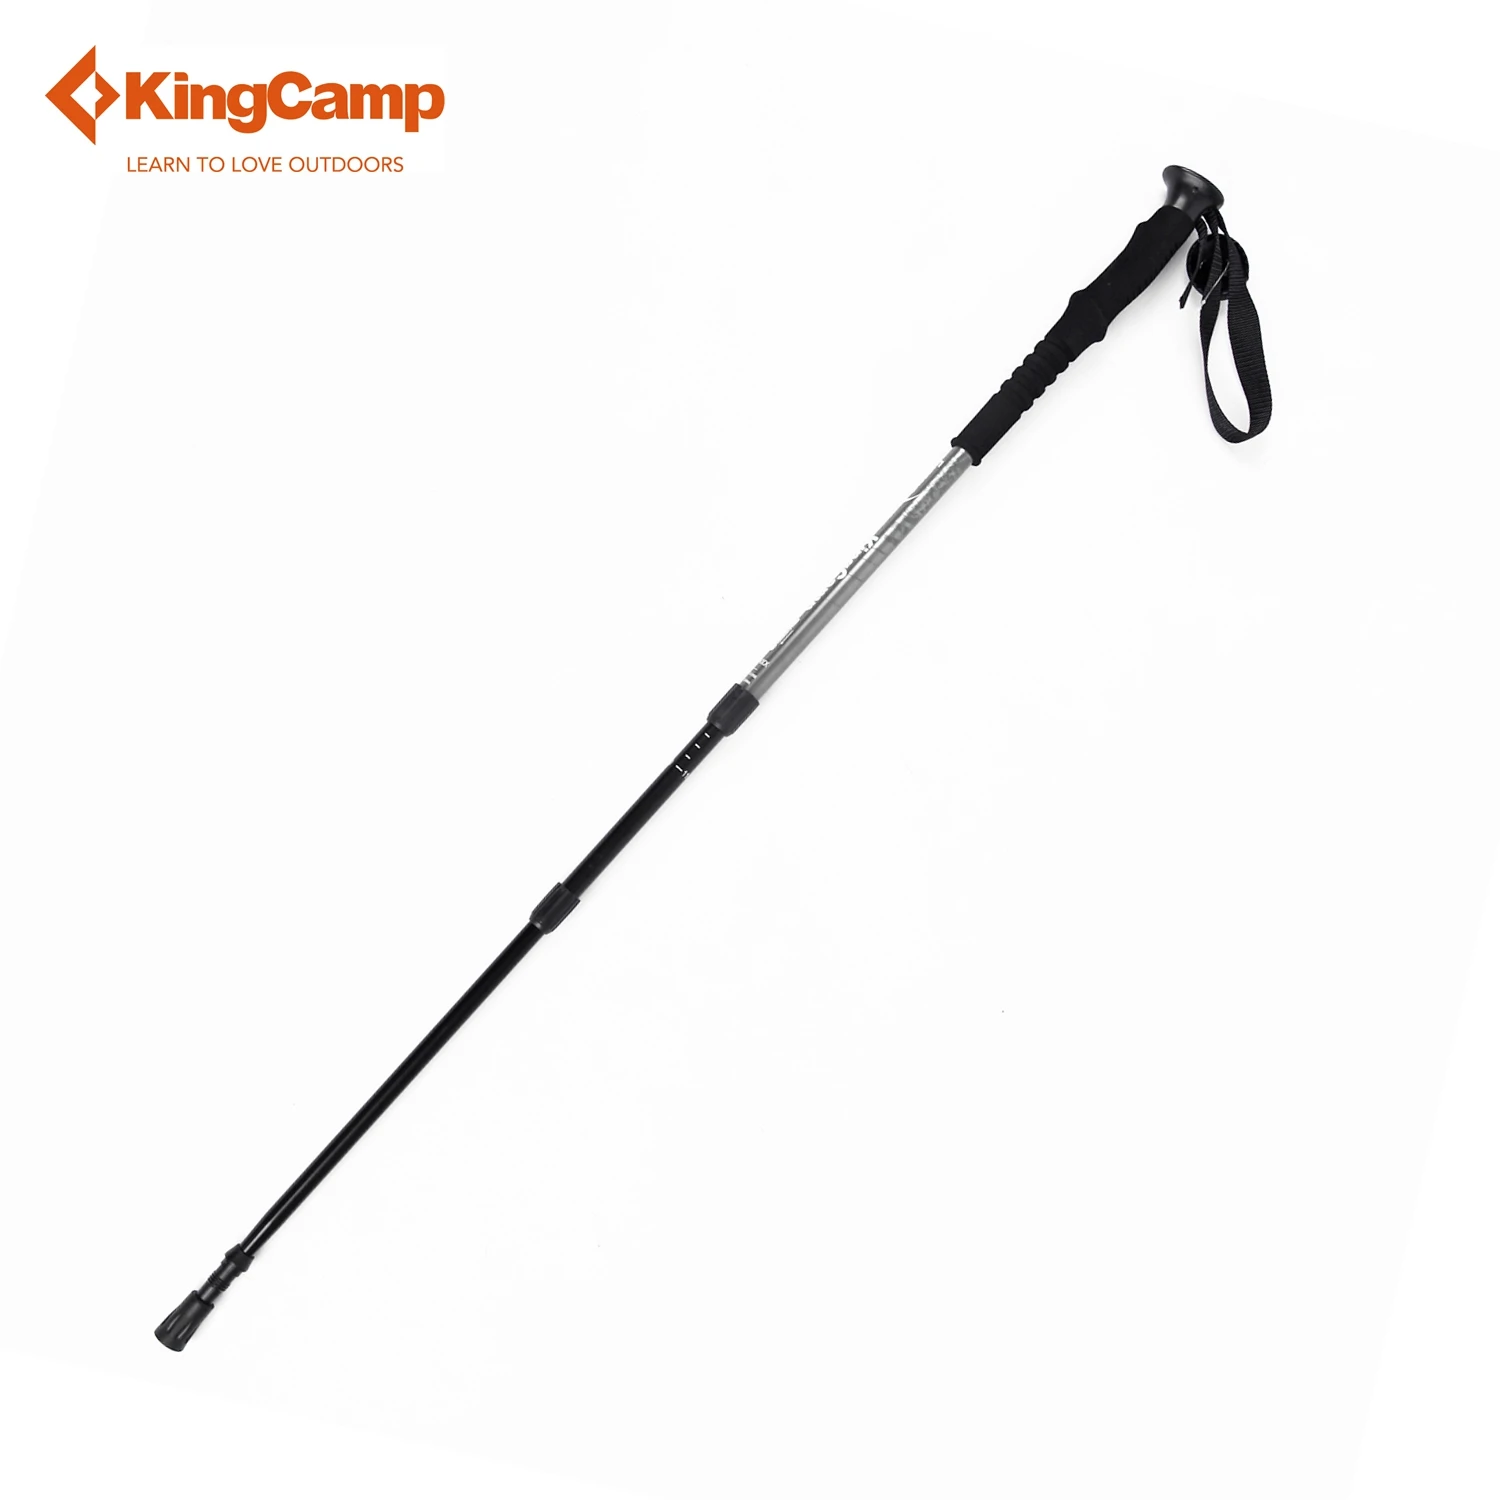 KingCamp палка для похода открытый кемпинг палки трекинговые hiking poles телескопическая трость палки для скандинавской ходьбы